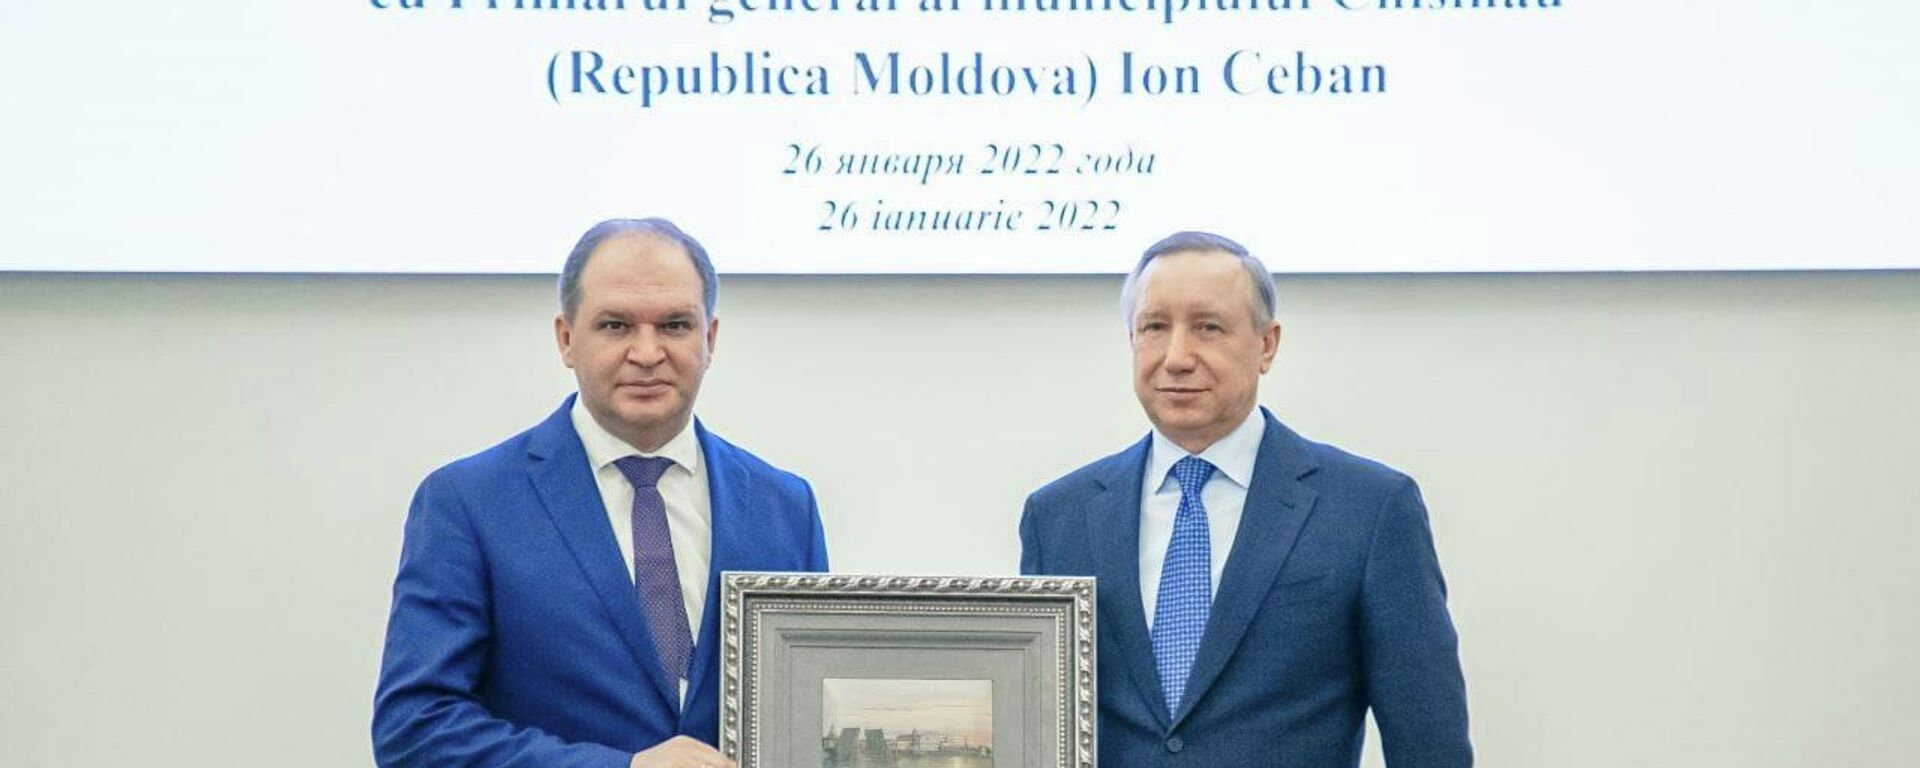 Ion Ceban se află într-o vizită oficială la Sankt-Petersburg - Sputnik Moldova, 1920, 26.01.2022